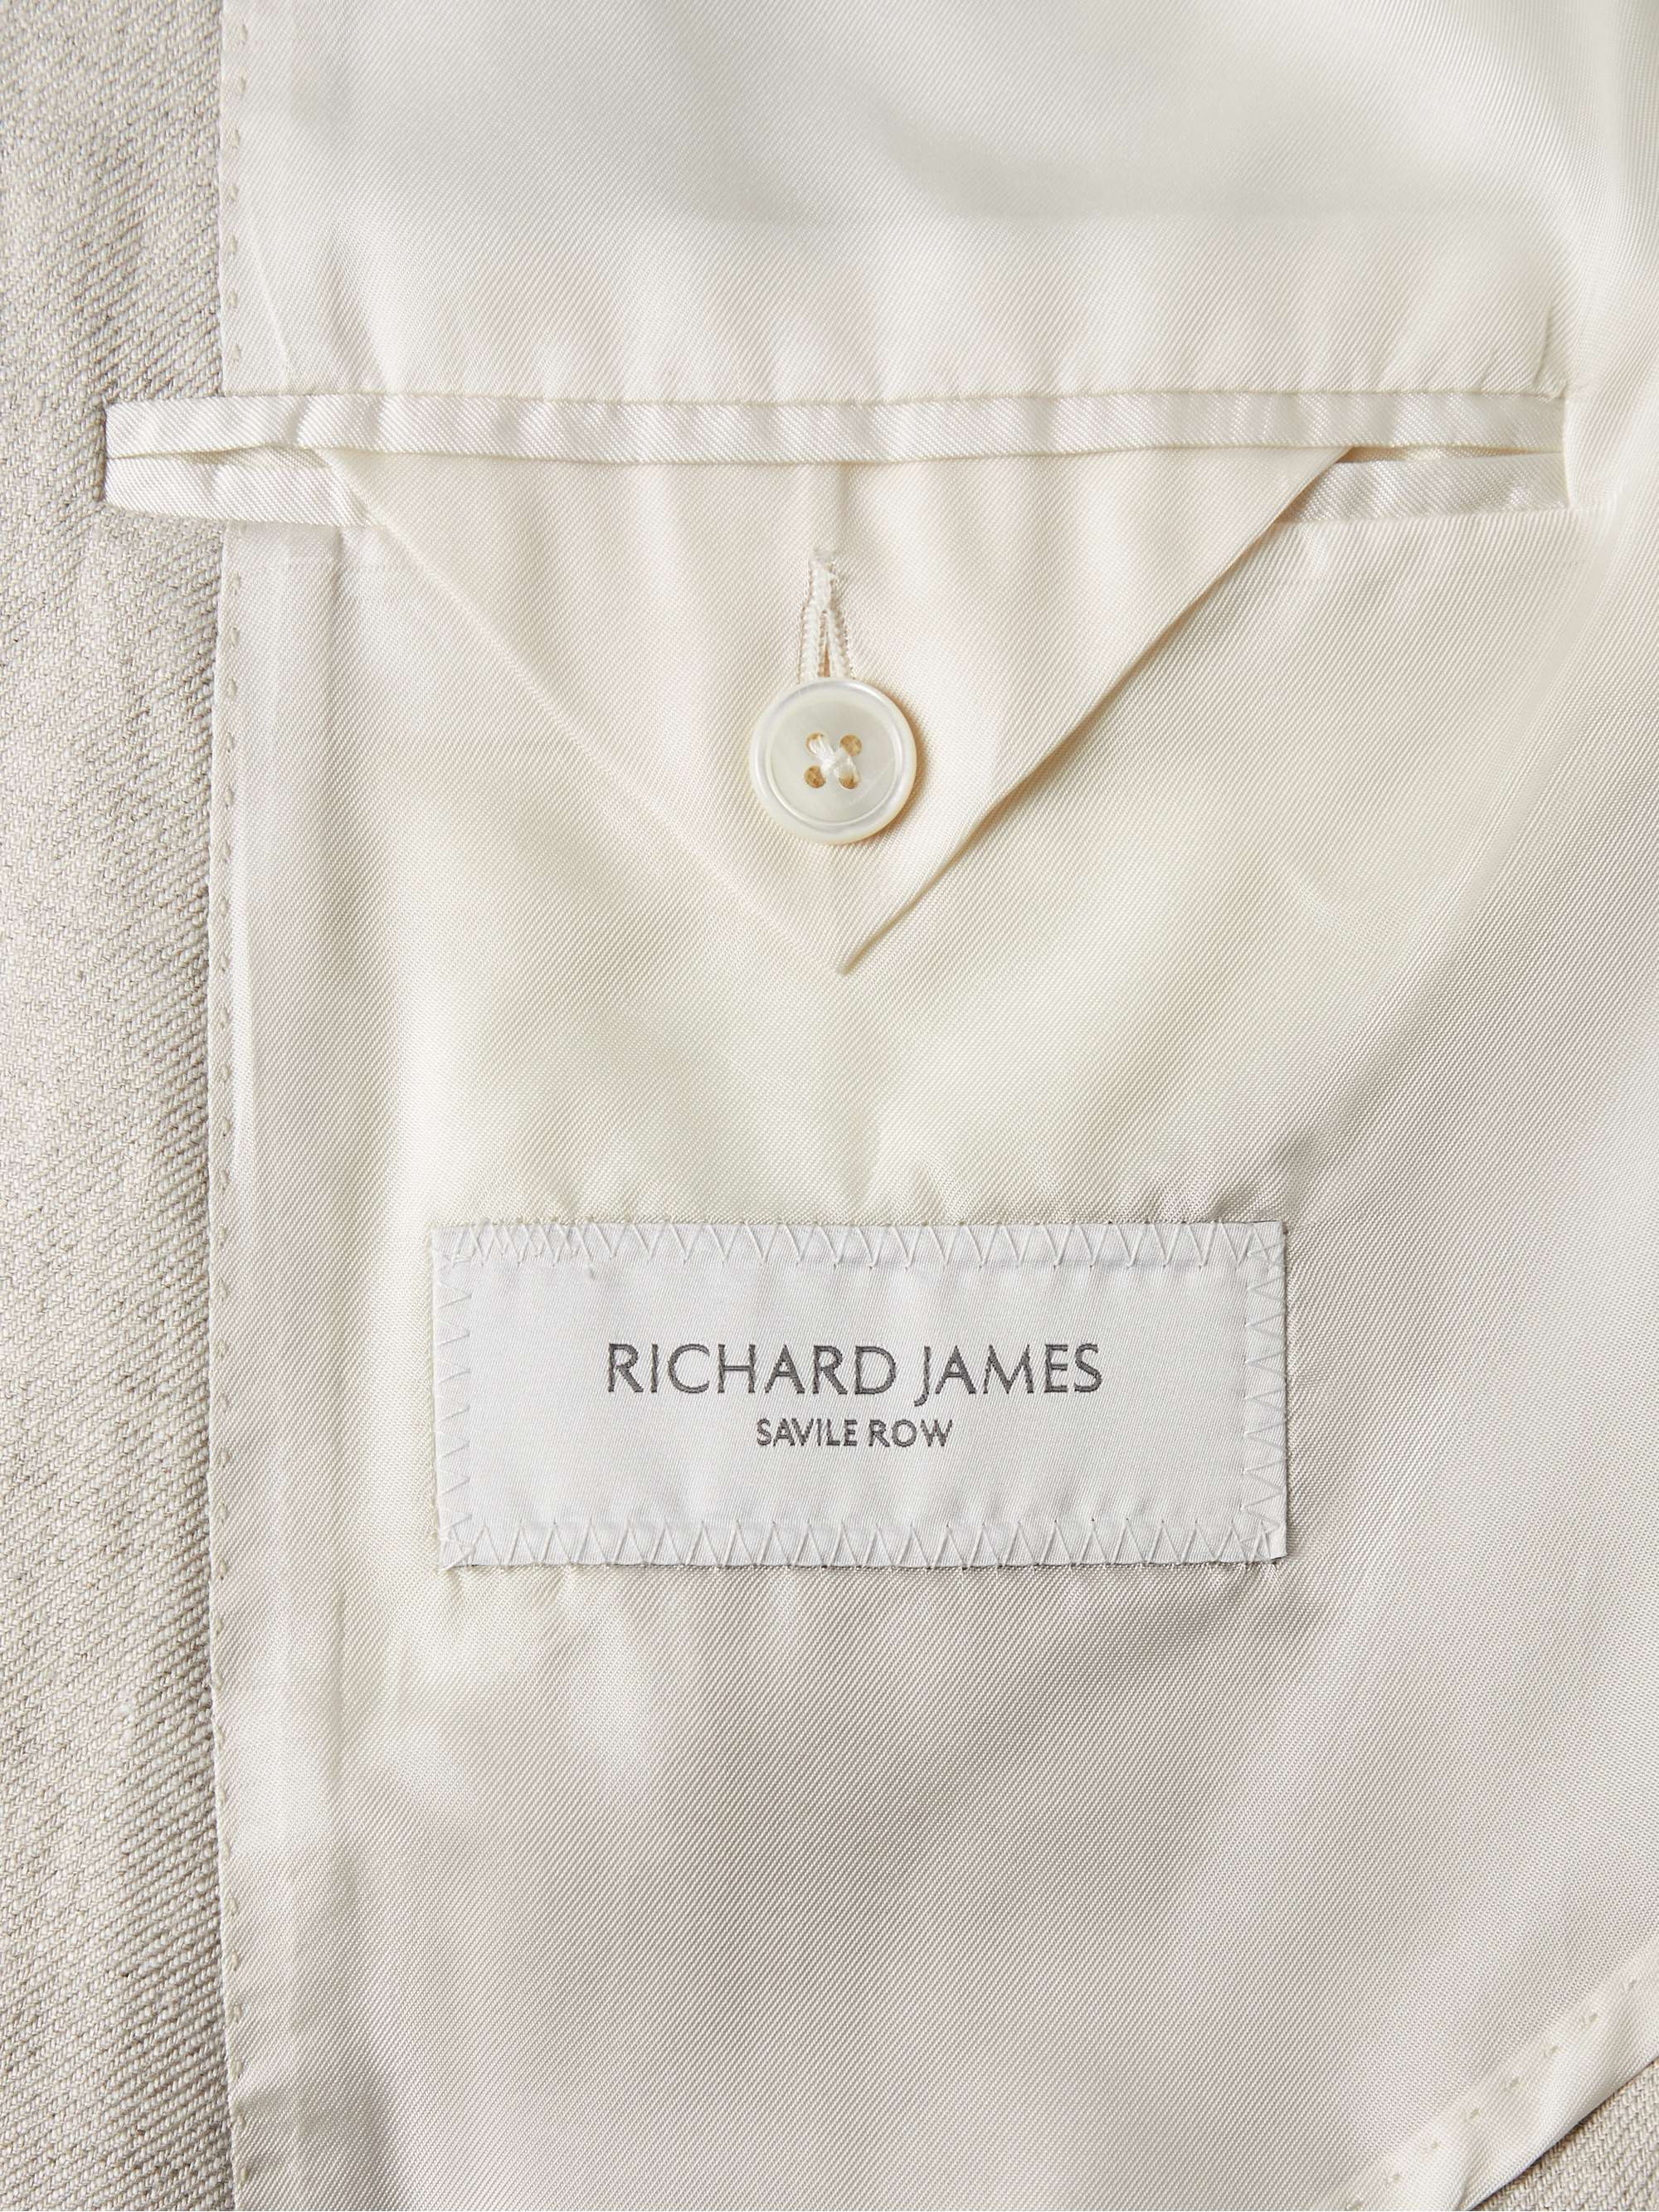 RICHARD JAMES 